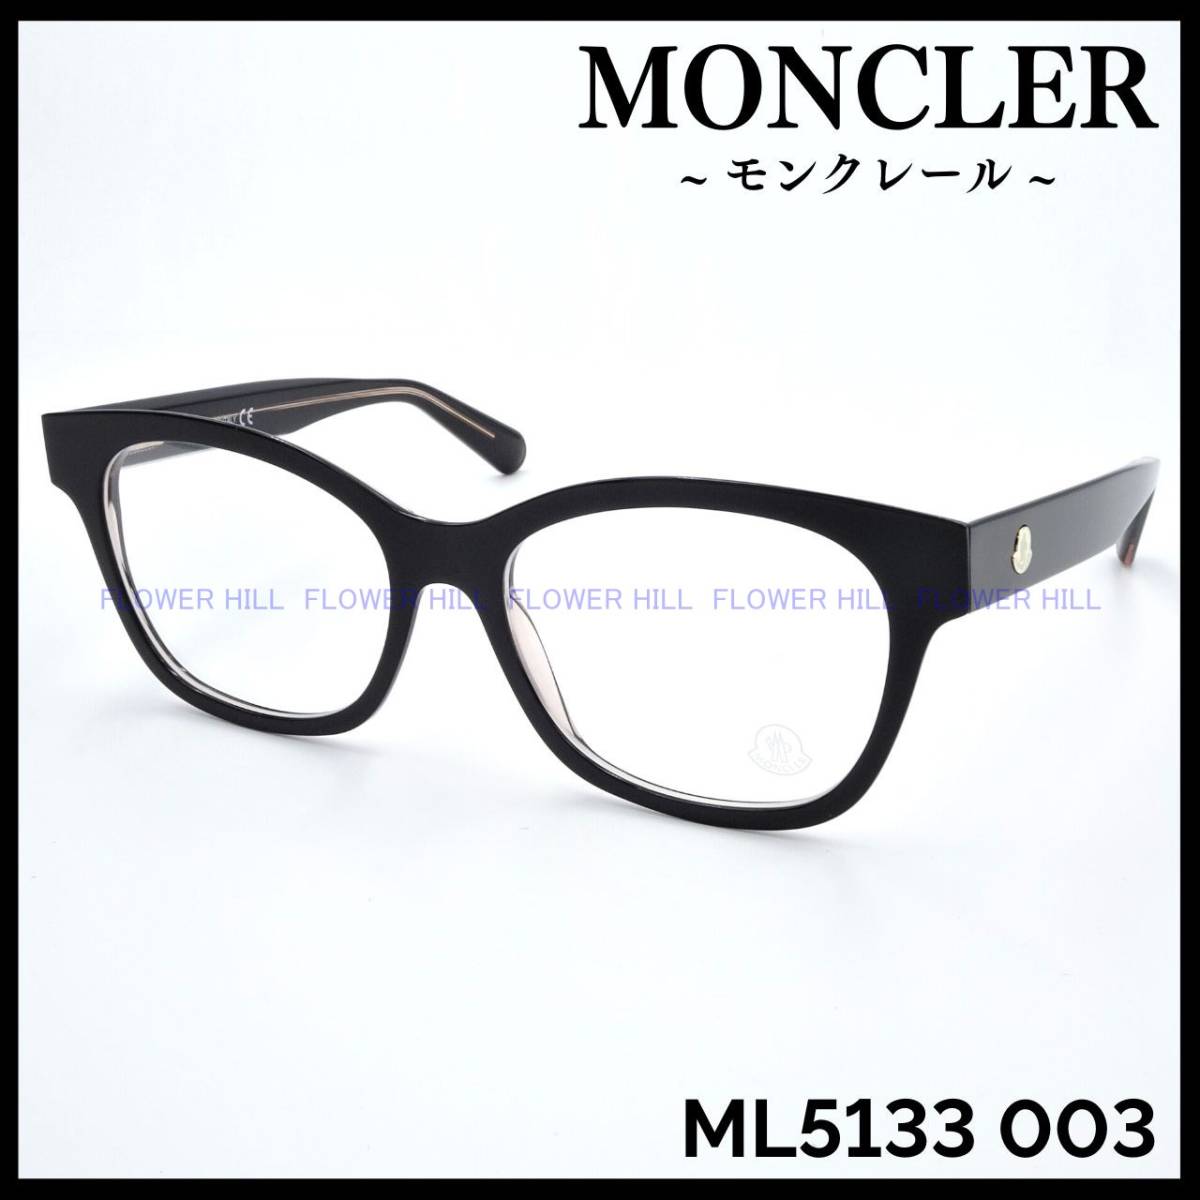 【新品・送料無料】 モンクレール MONCLER メガネ ML5133 003 ブラック イタリア製 メンズ レディース